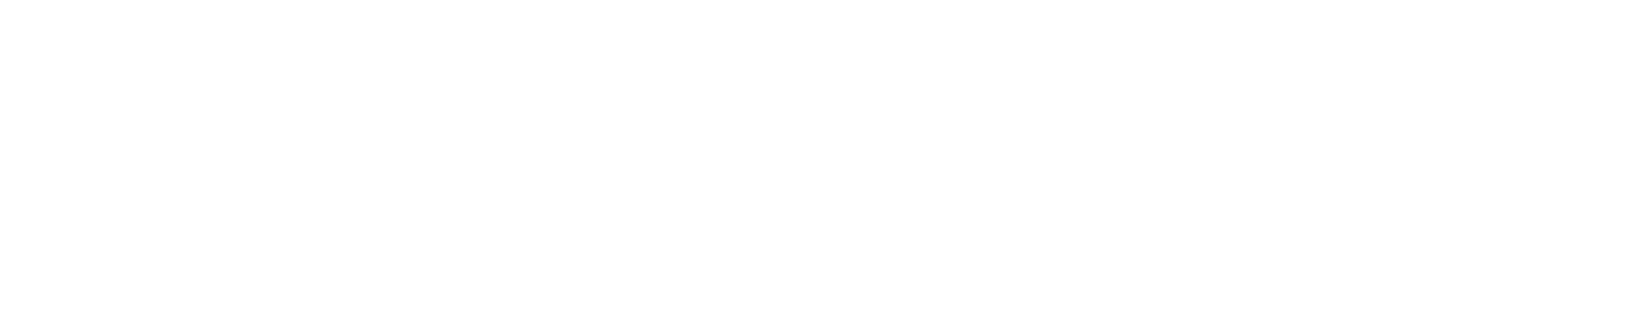 NPP-logo-white